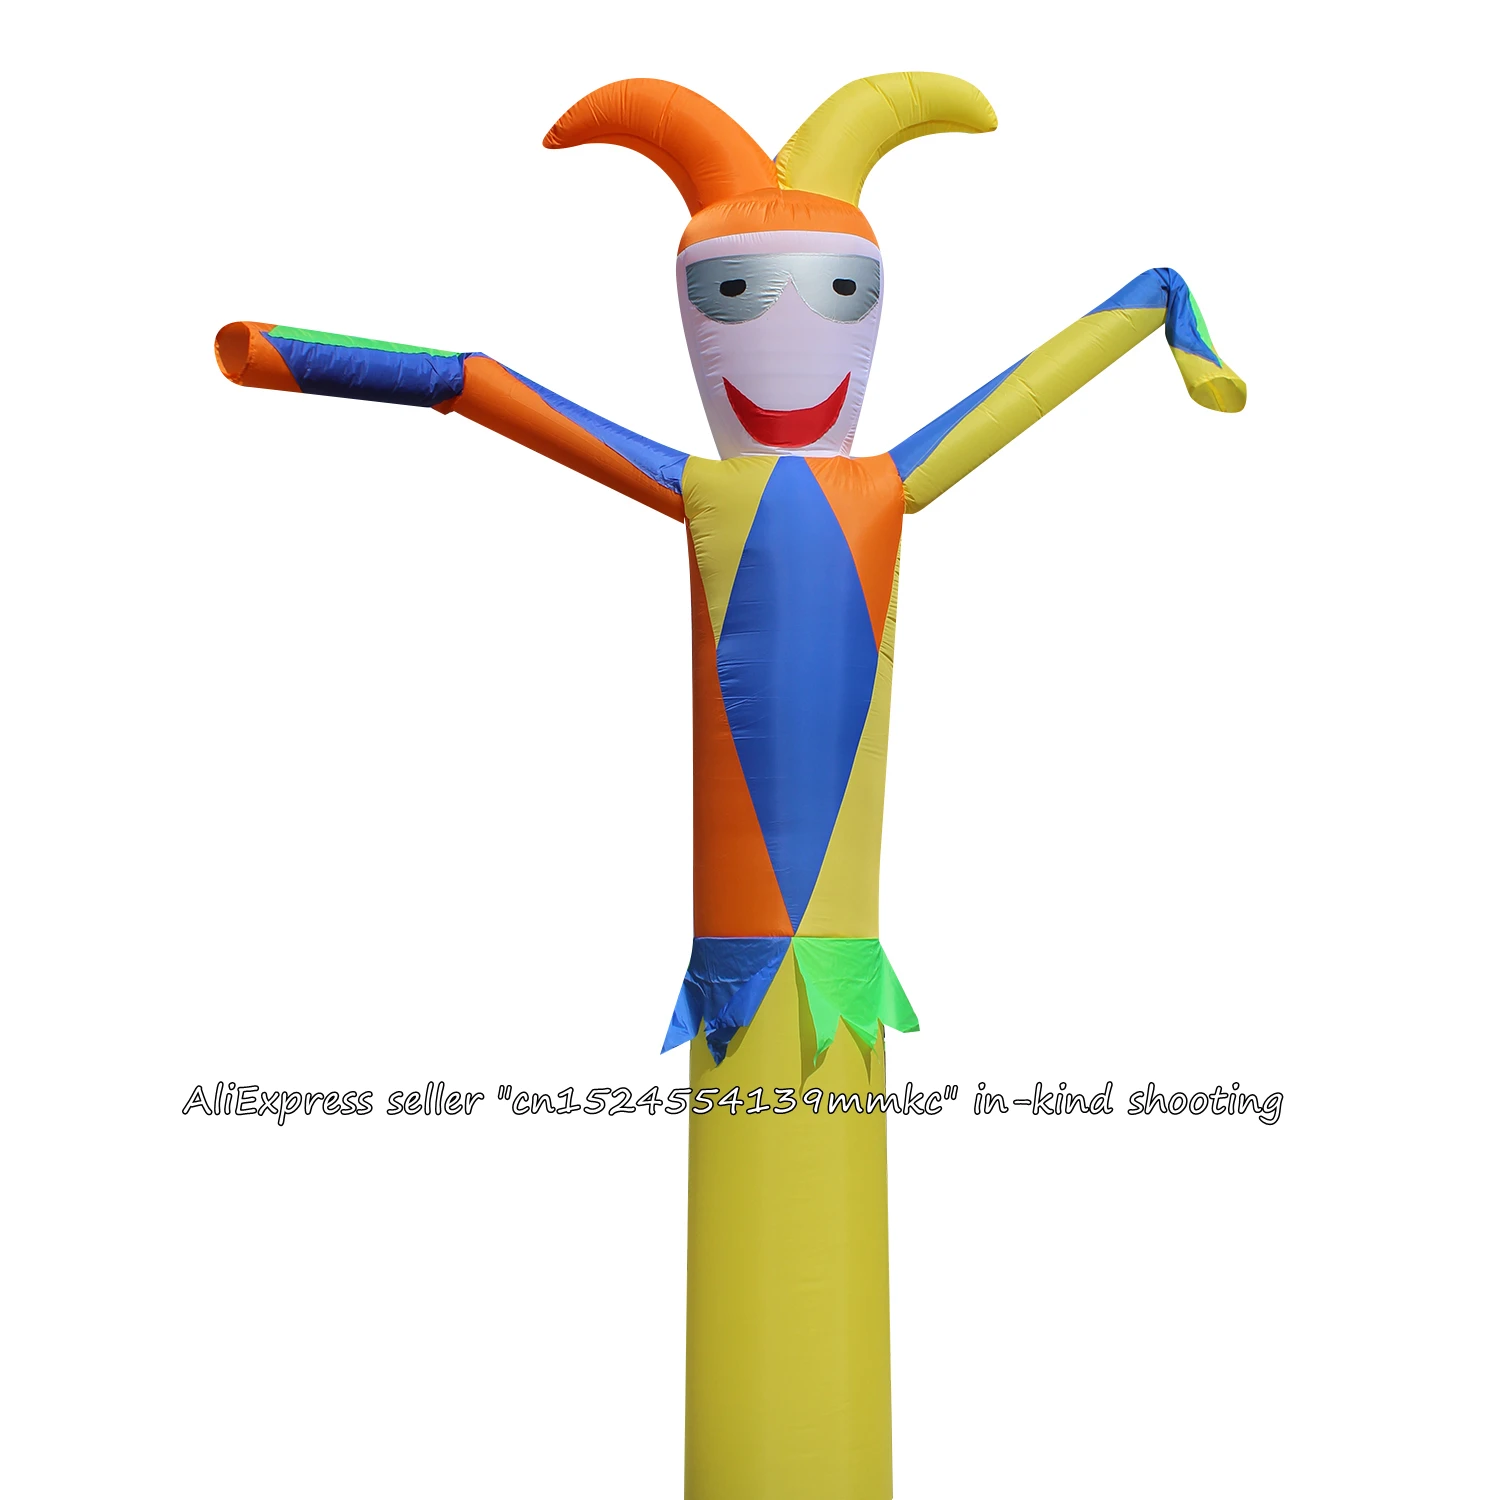 3D 13ft для 45 см Blowe Air Dancer Sky Dancer надувная трубка клоун танец кукольный ветер надувная реклама надувной замок